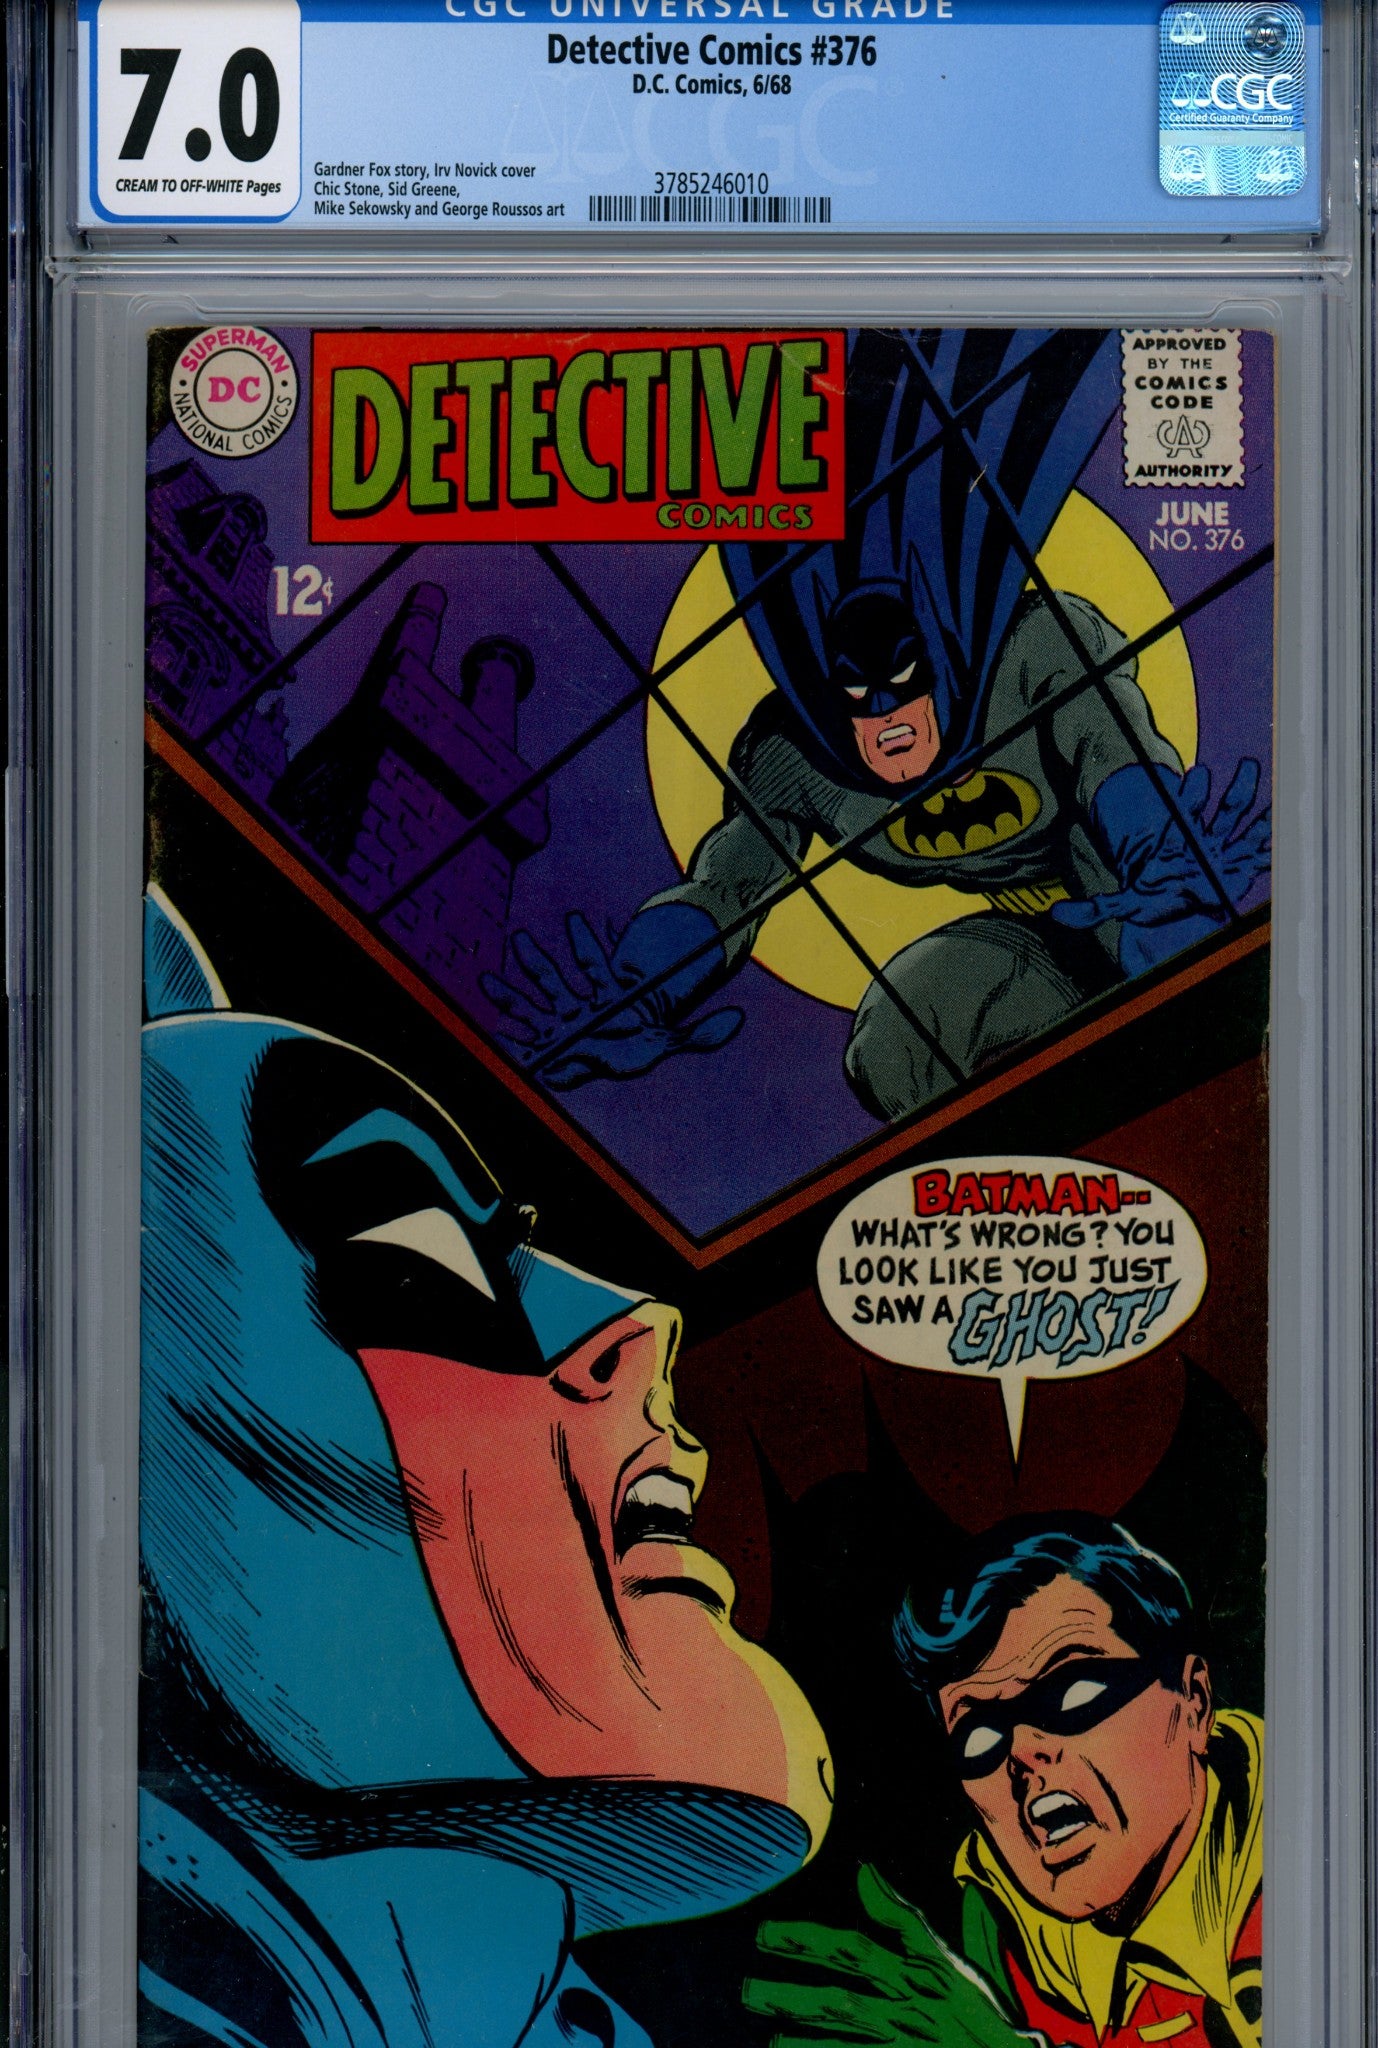 Detective Comics Vol 1 376 CGC 7.0 (FN/VF) (1968) 